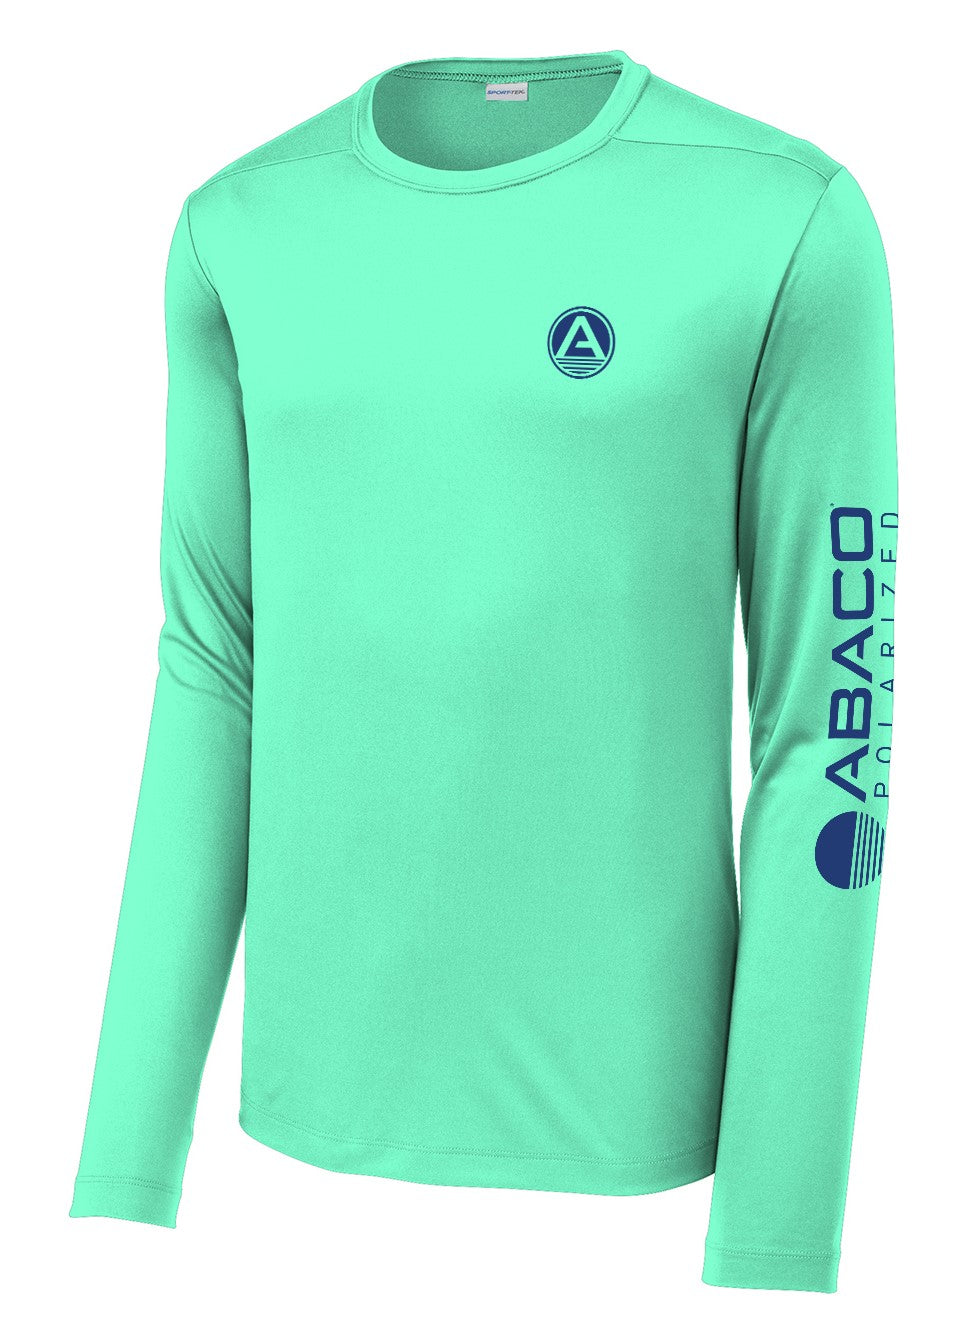 Abaco Performance UV Fishing Shirt – Abaco Polarized